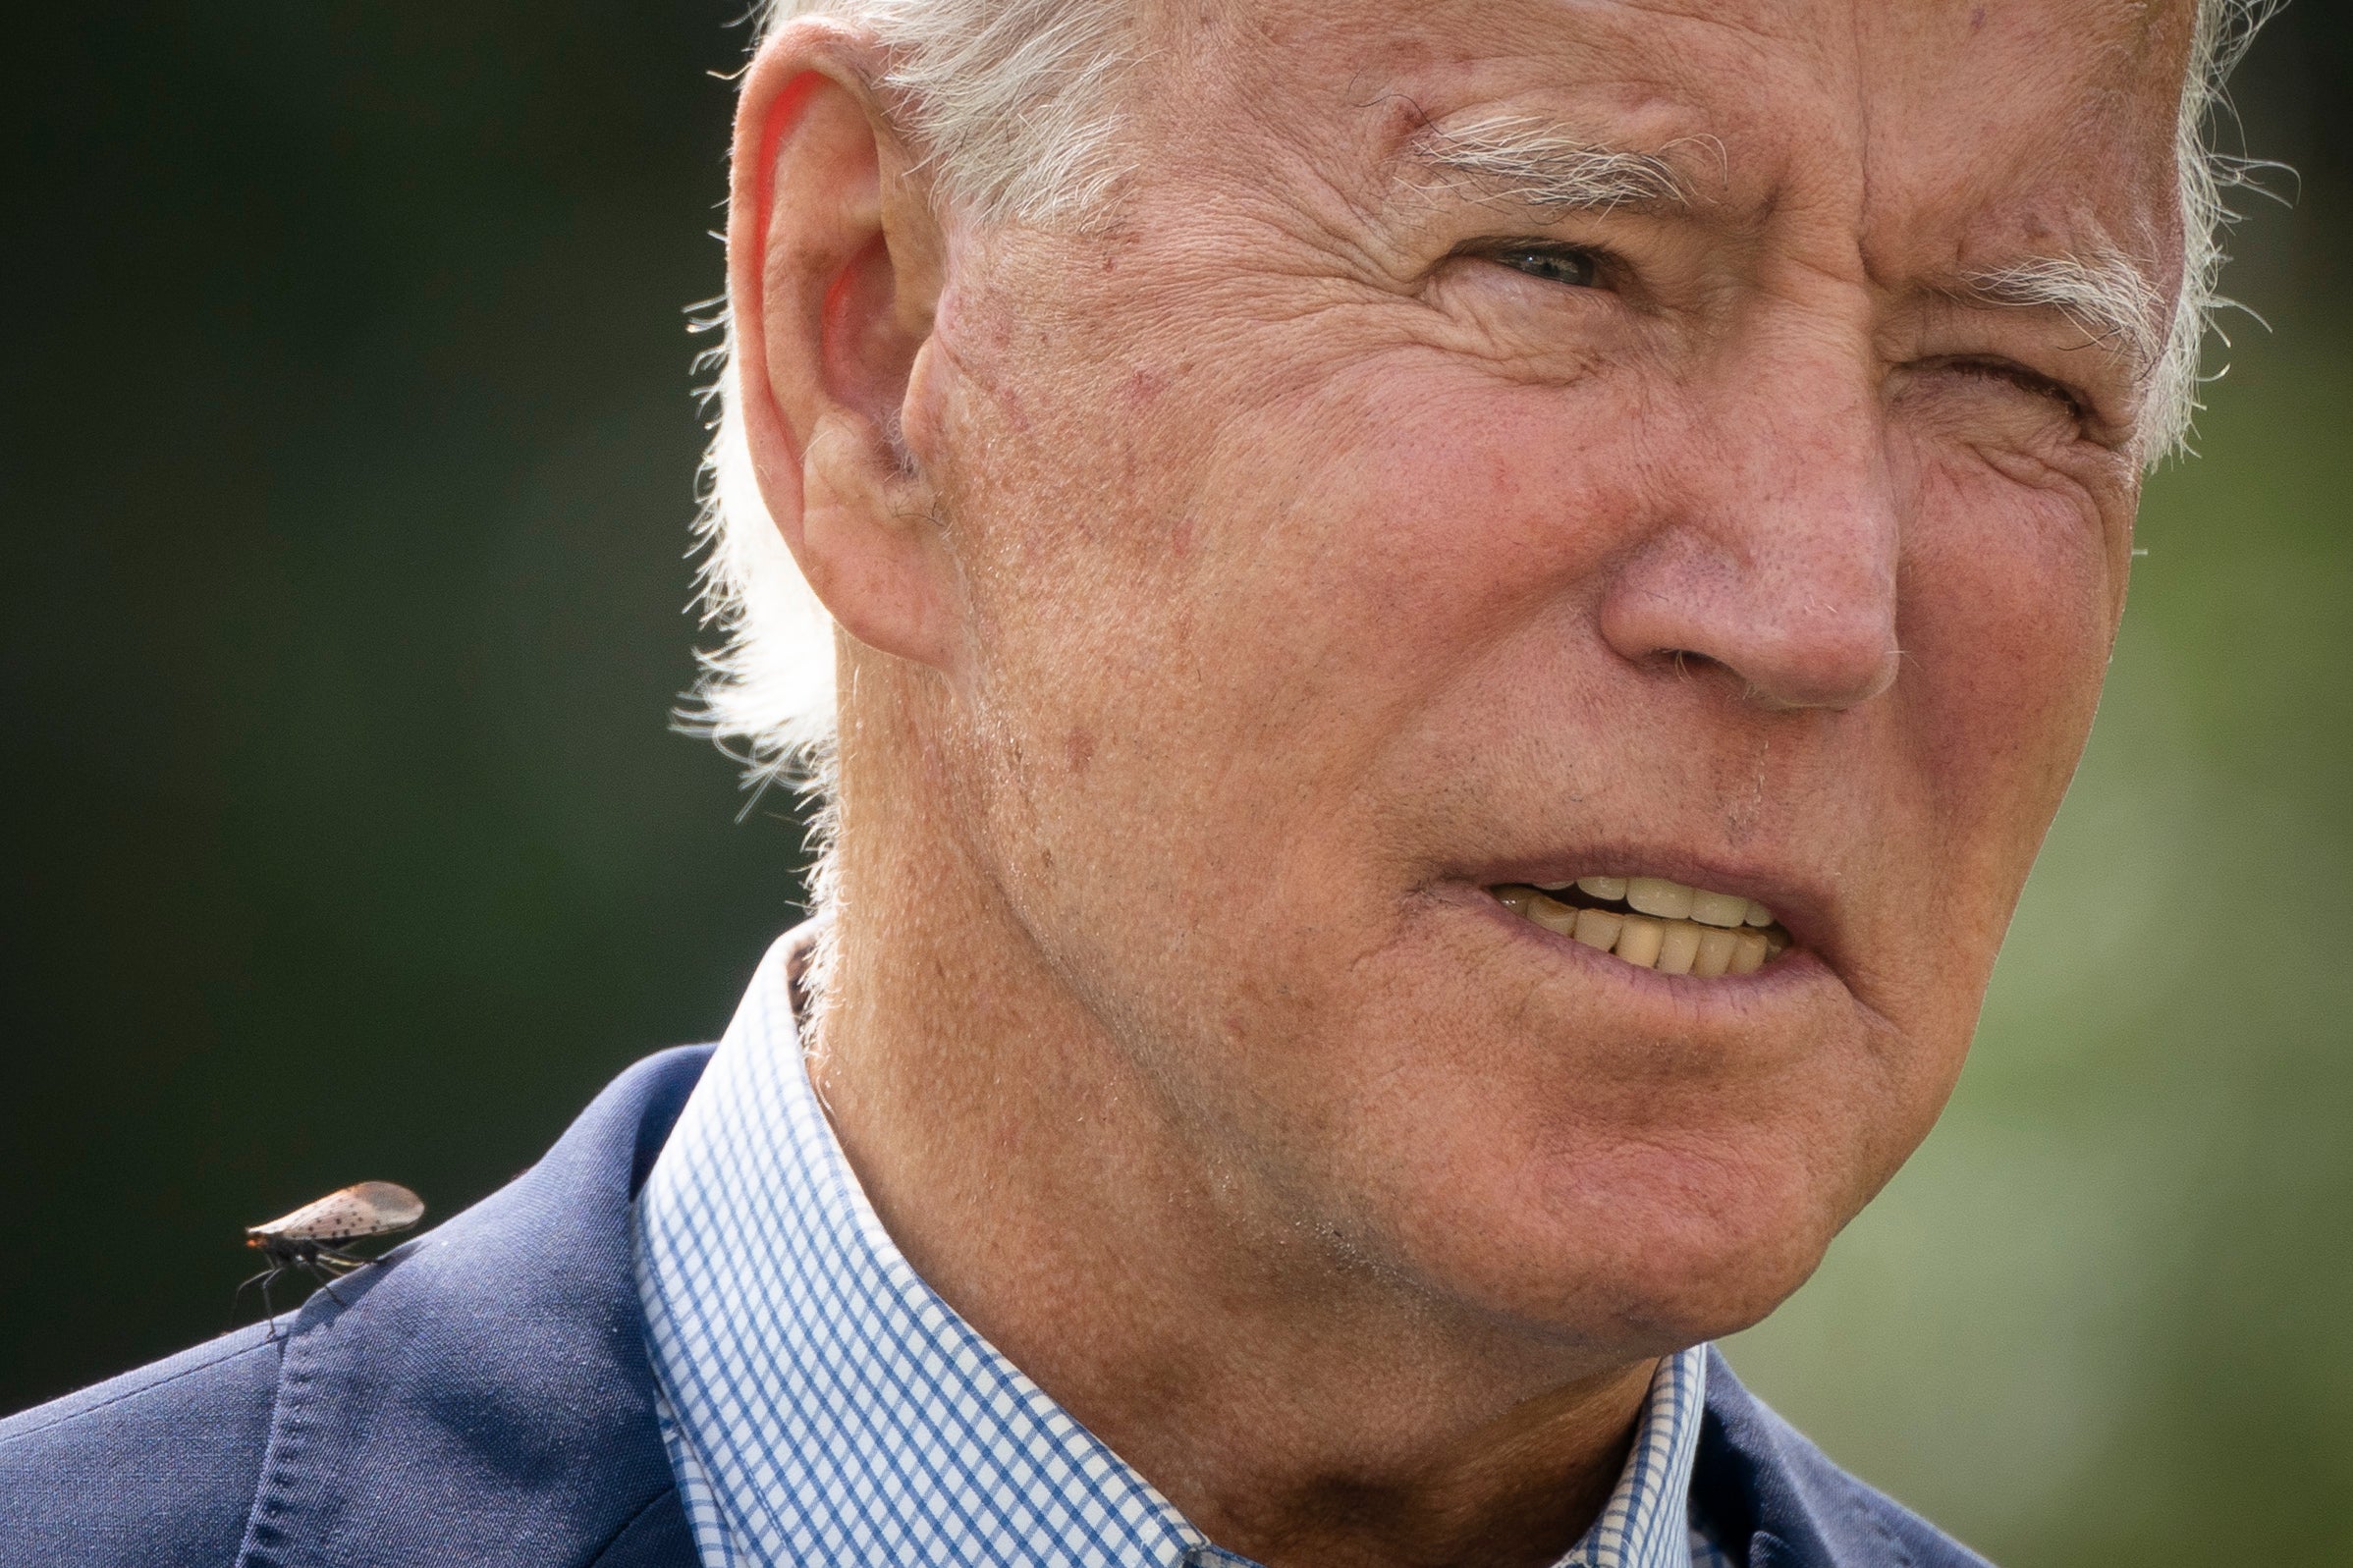 A spotted lanternfly lands on the shoulder of President Joe Biden on 14 September 2020